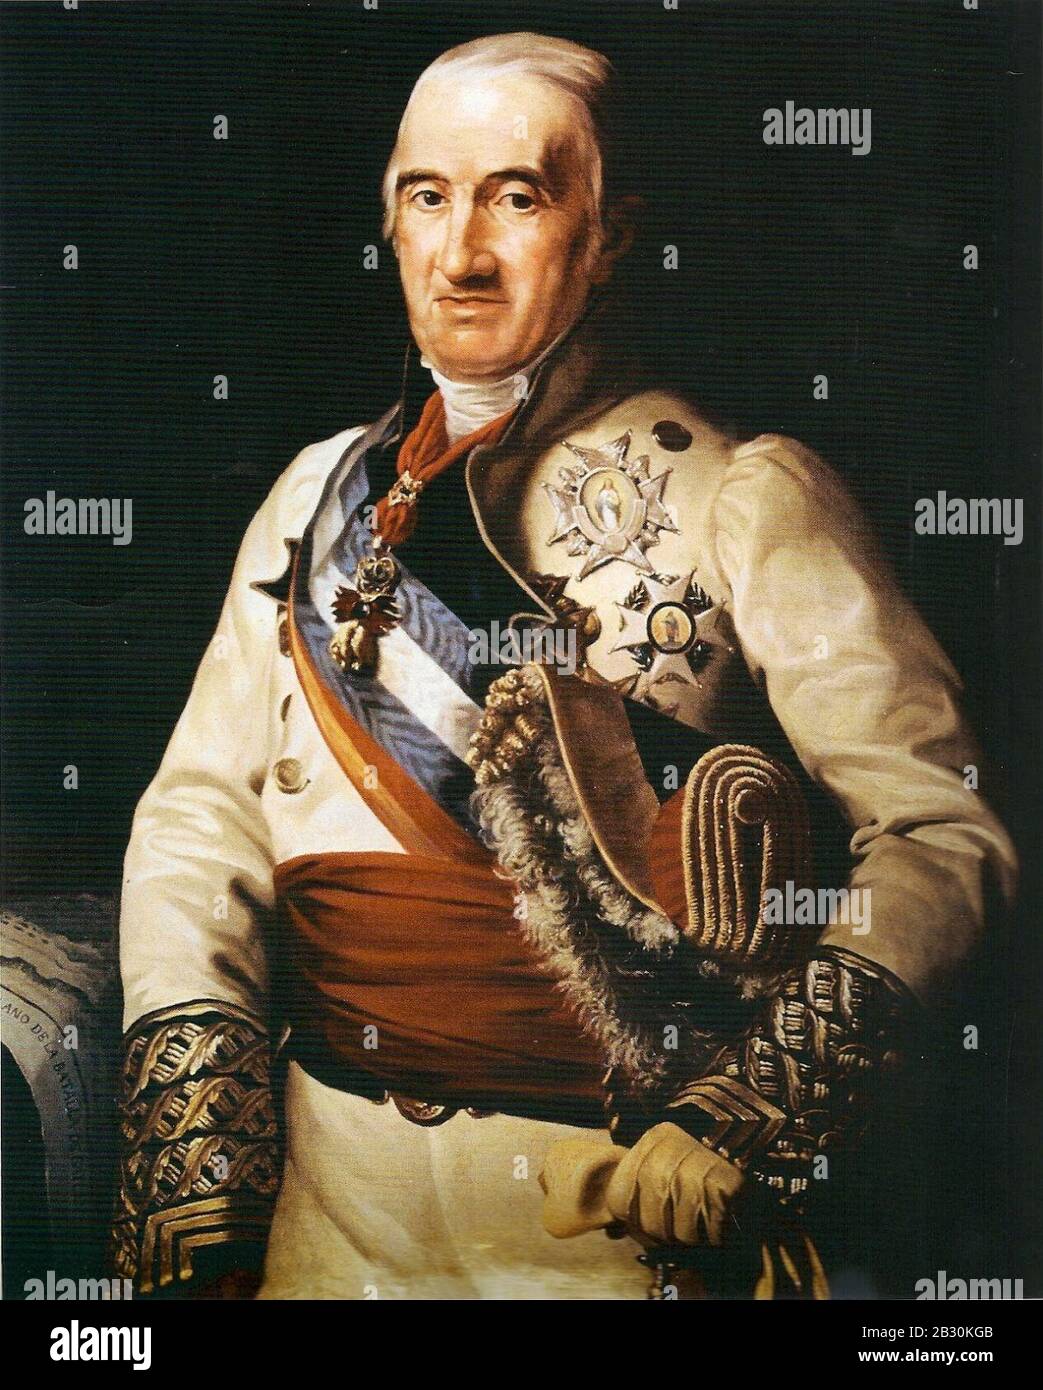 General Francisco Javier Castaños, duque de Bailén. Stock Photo